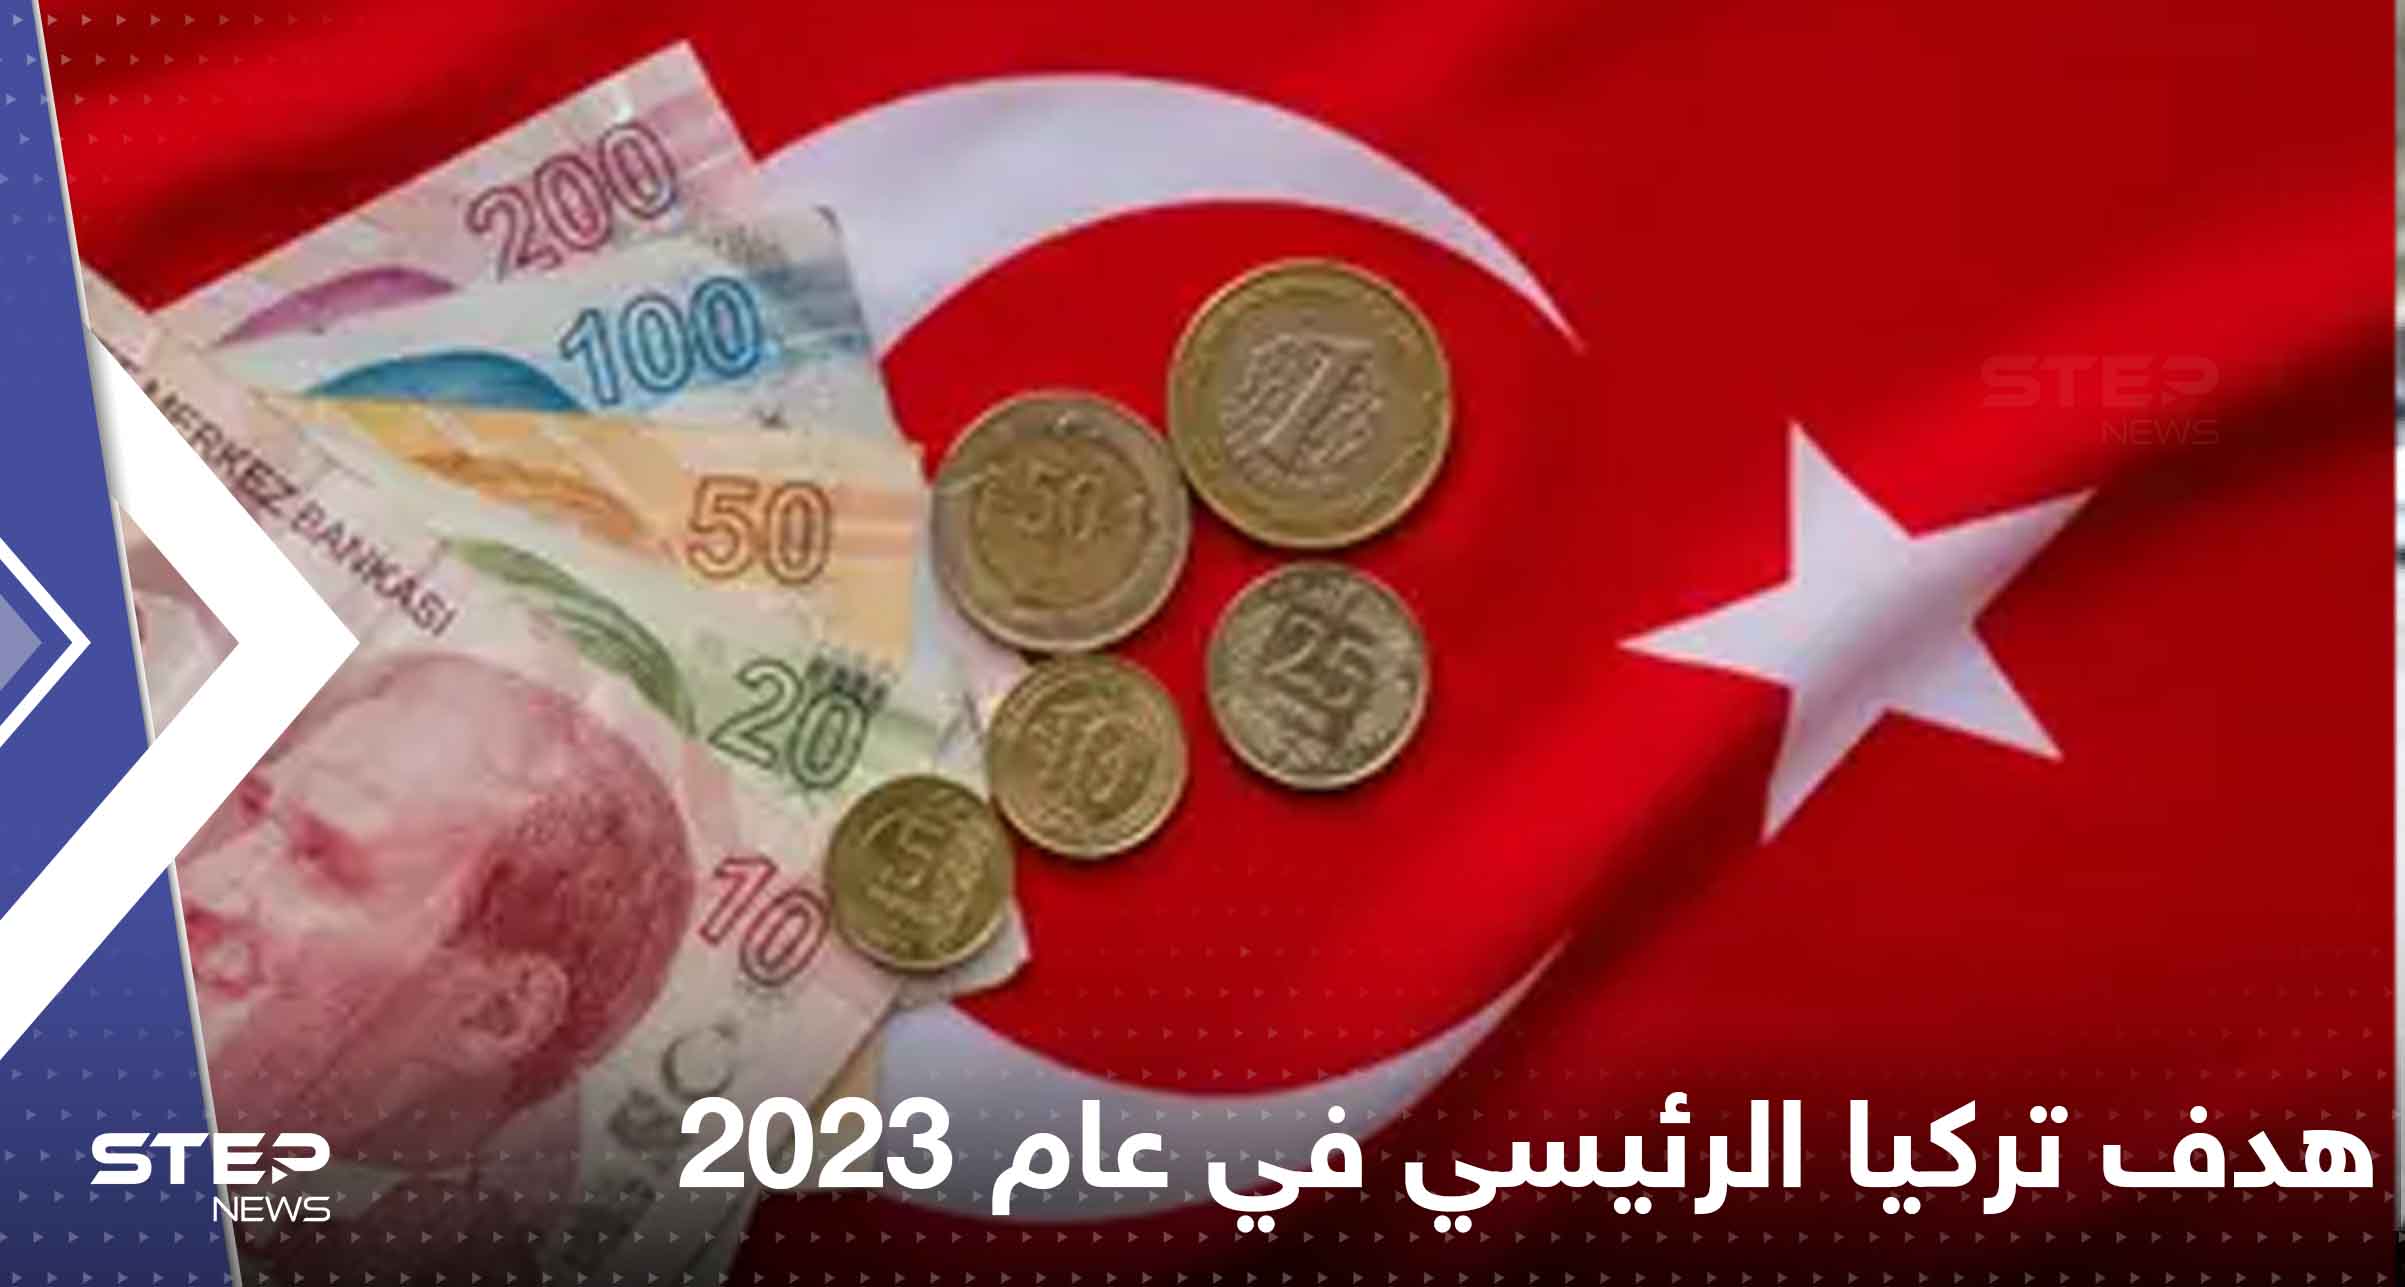 هدف تركيا الرئيسي في عام 2023